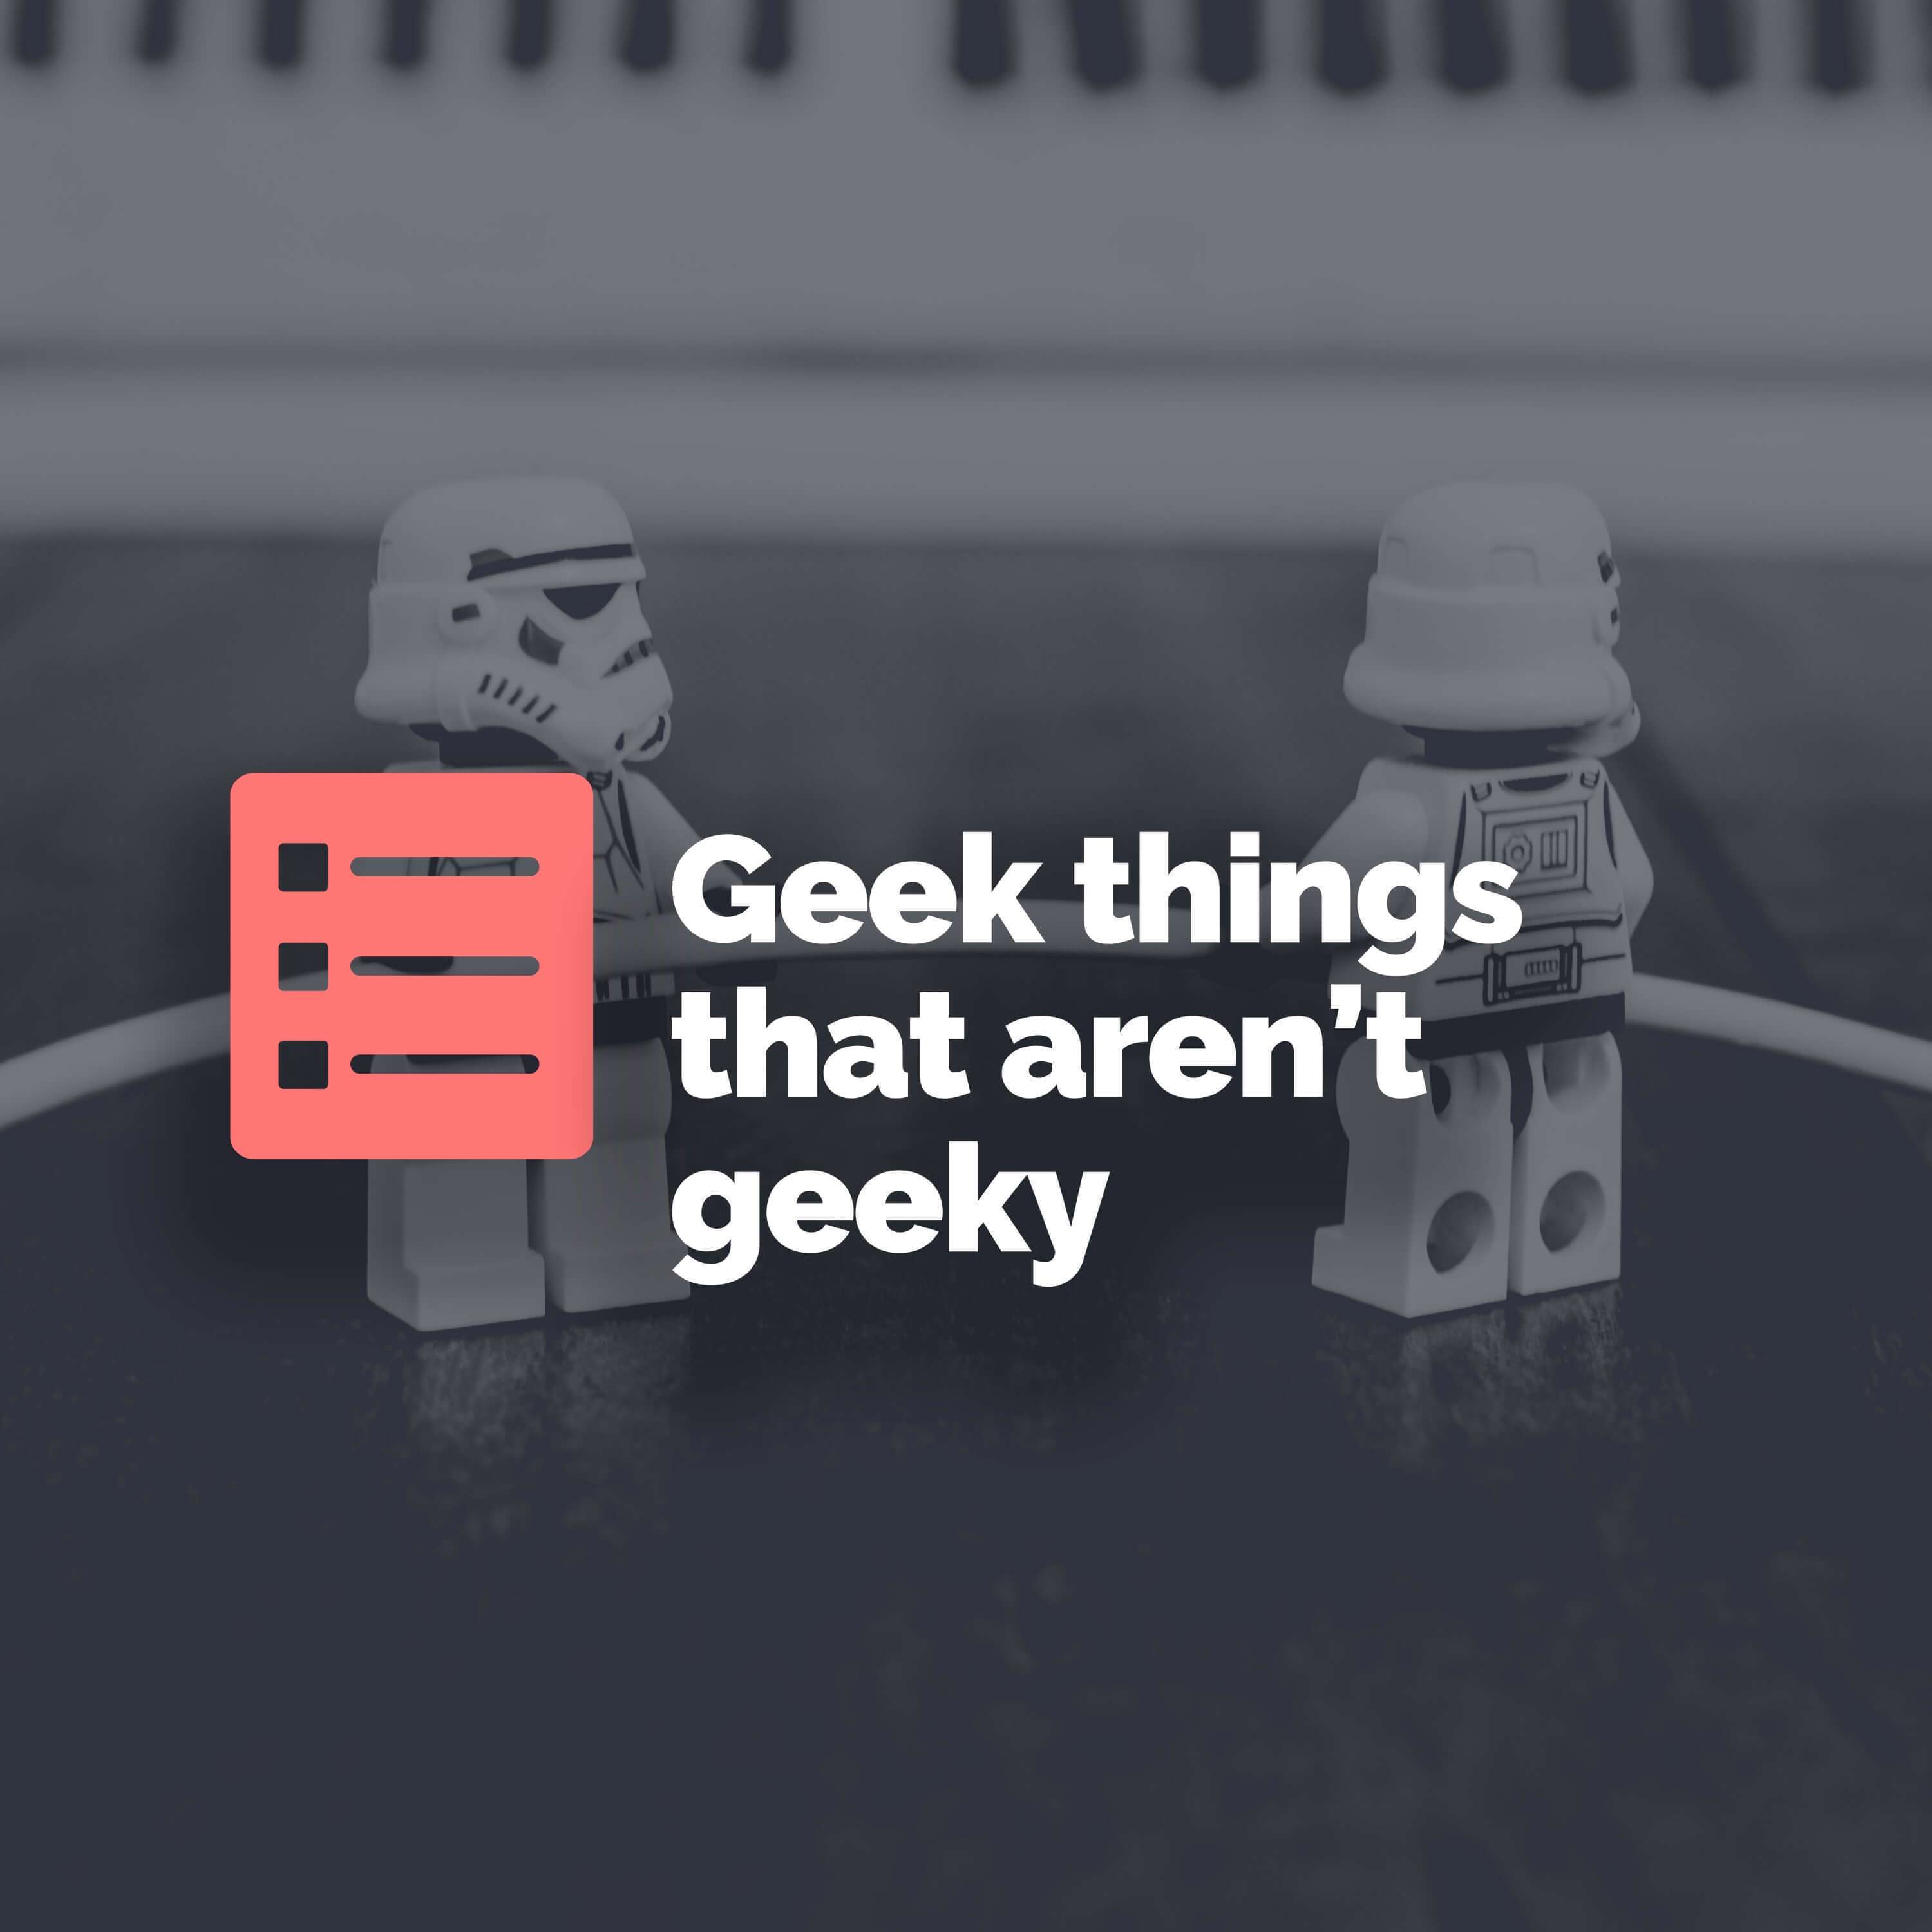 Top 5 geek things that aren’t geeky